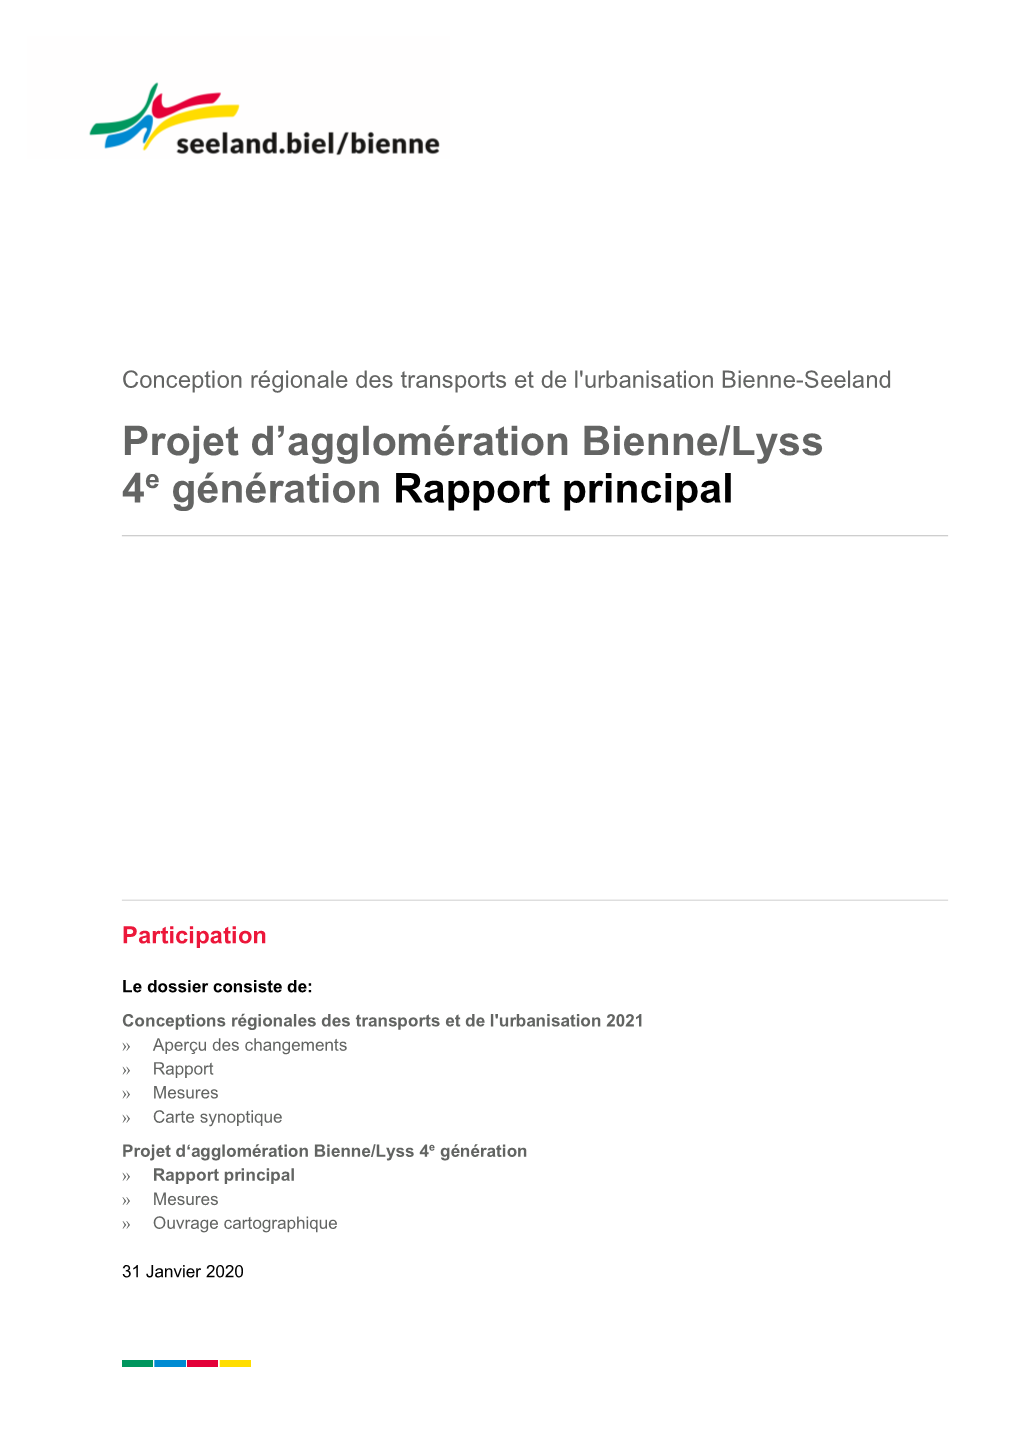 Projet D'agglomération Bienne/Lyss 4E Génération Rapport Principal